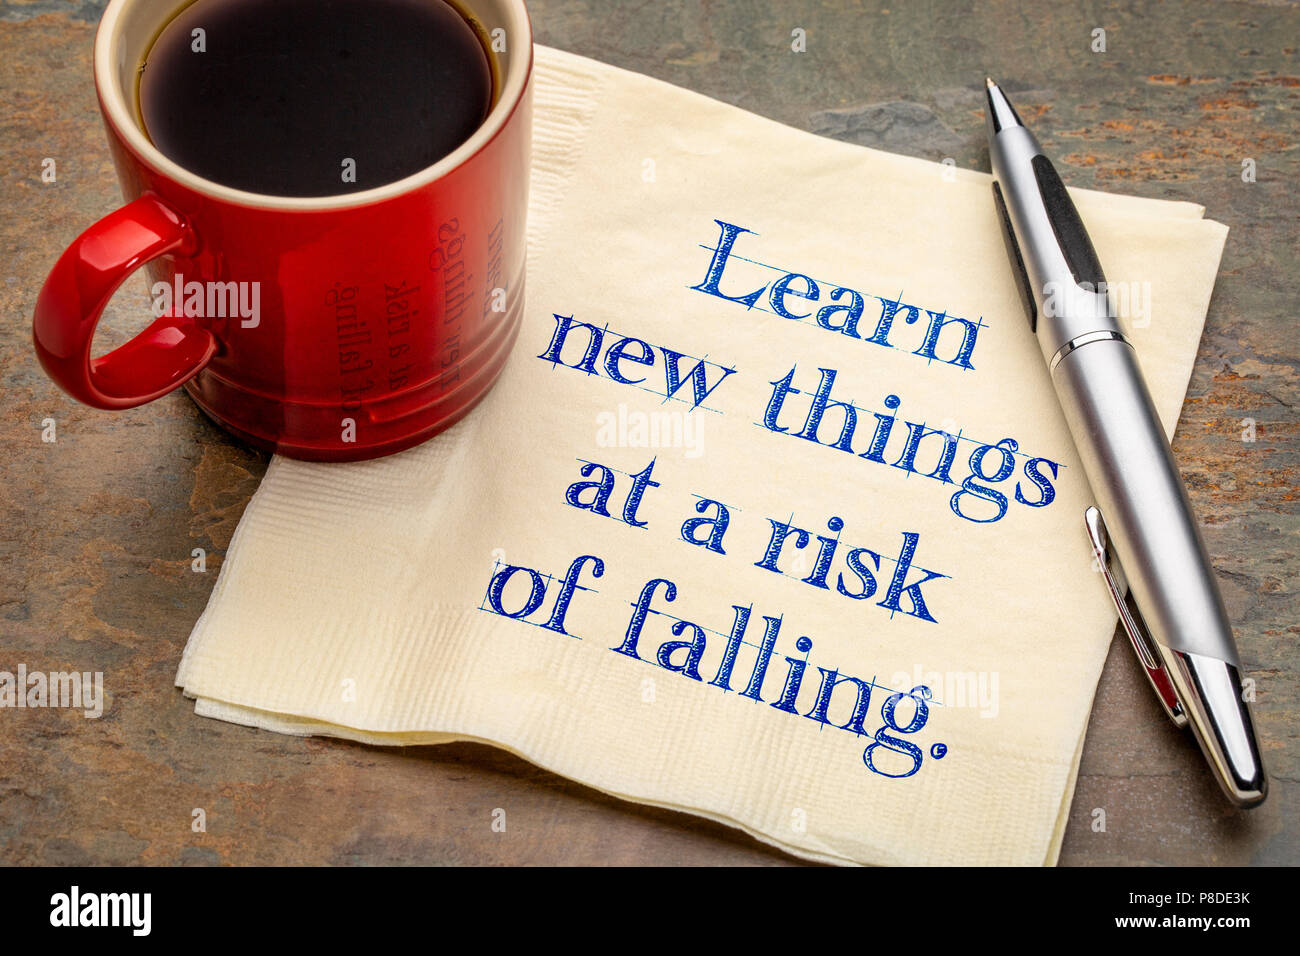 Neue Sachen an die Gefahr eines Absturzes - Handschrift auf eine Serviette mit einer Tasse Kaffee Lernen Stockfoto